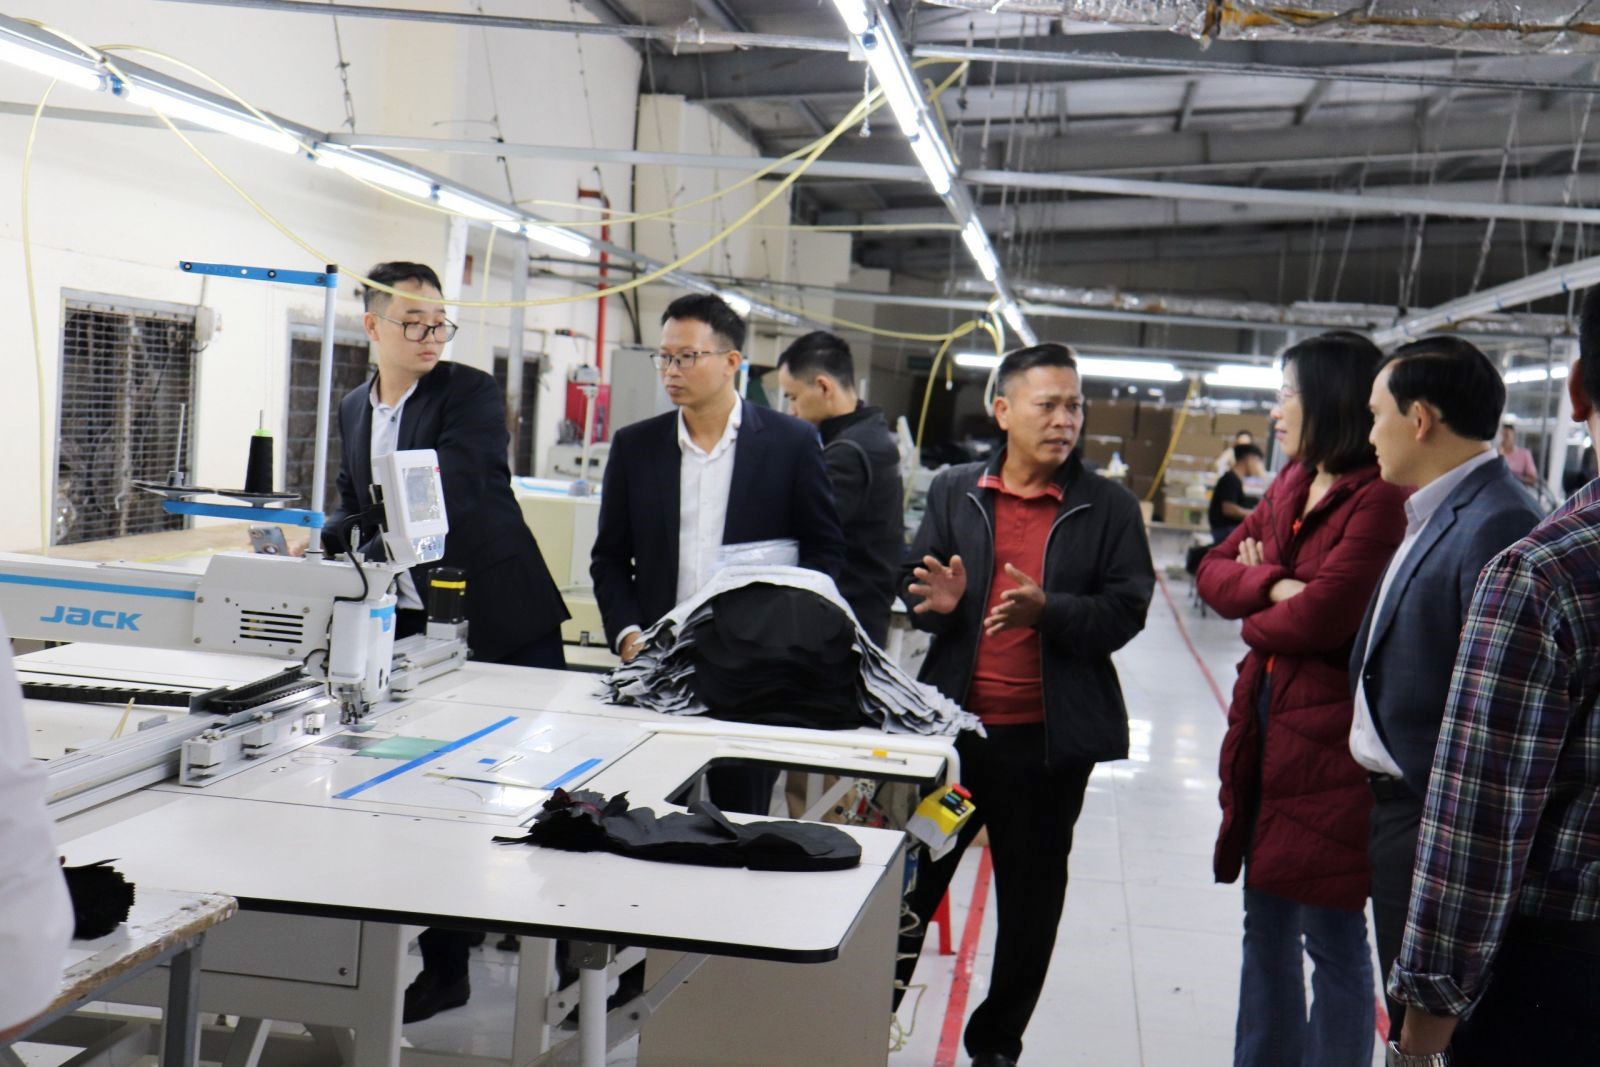 Nghiệm thu đề án hỗ trợ máy móc trong,sản xuất Máy may lập trình công nghiệp của Công ty TNHH Thuận Phát, xã An Bình, huyện Kiến Xương